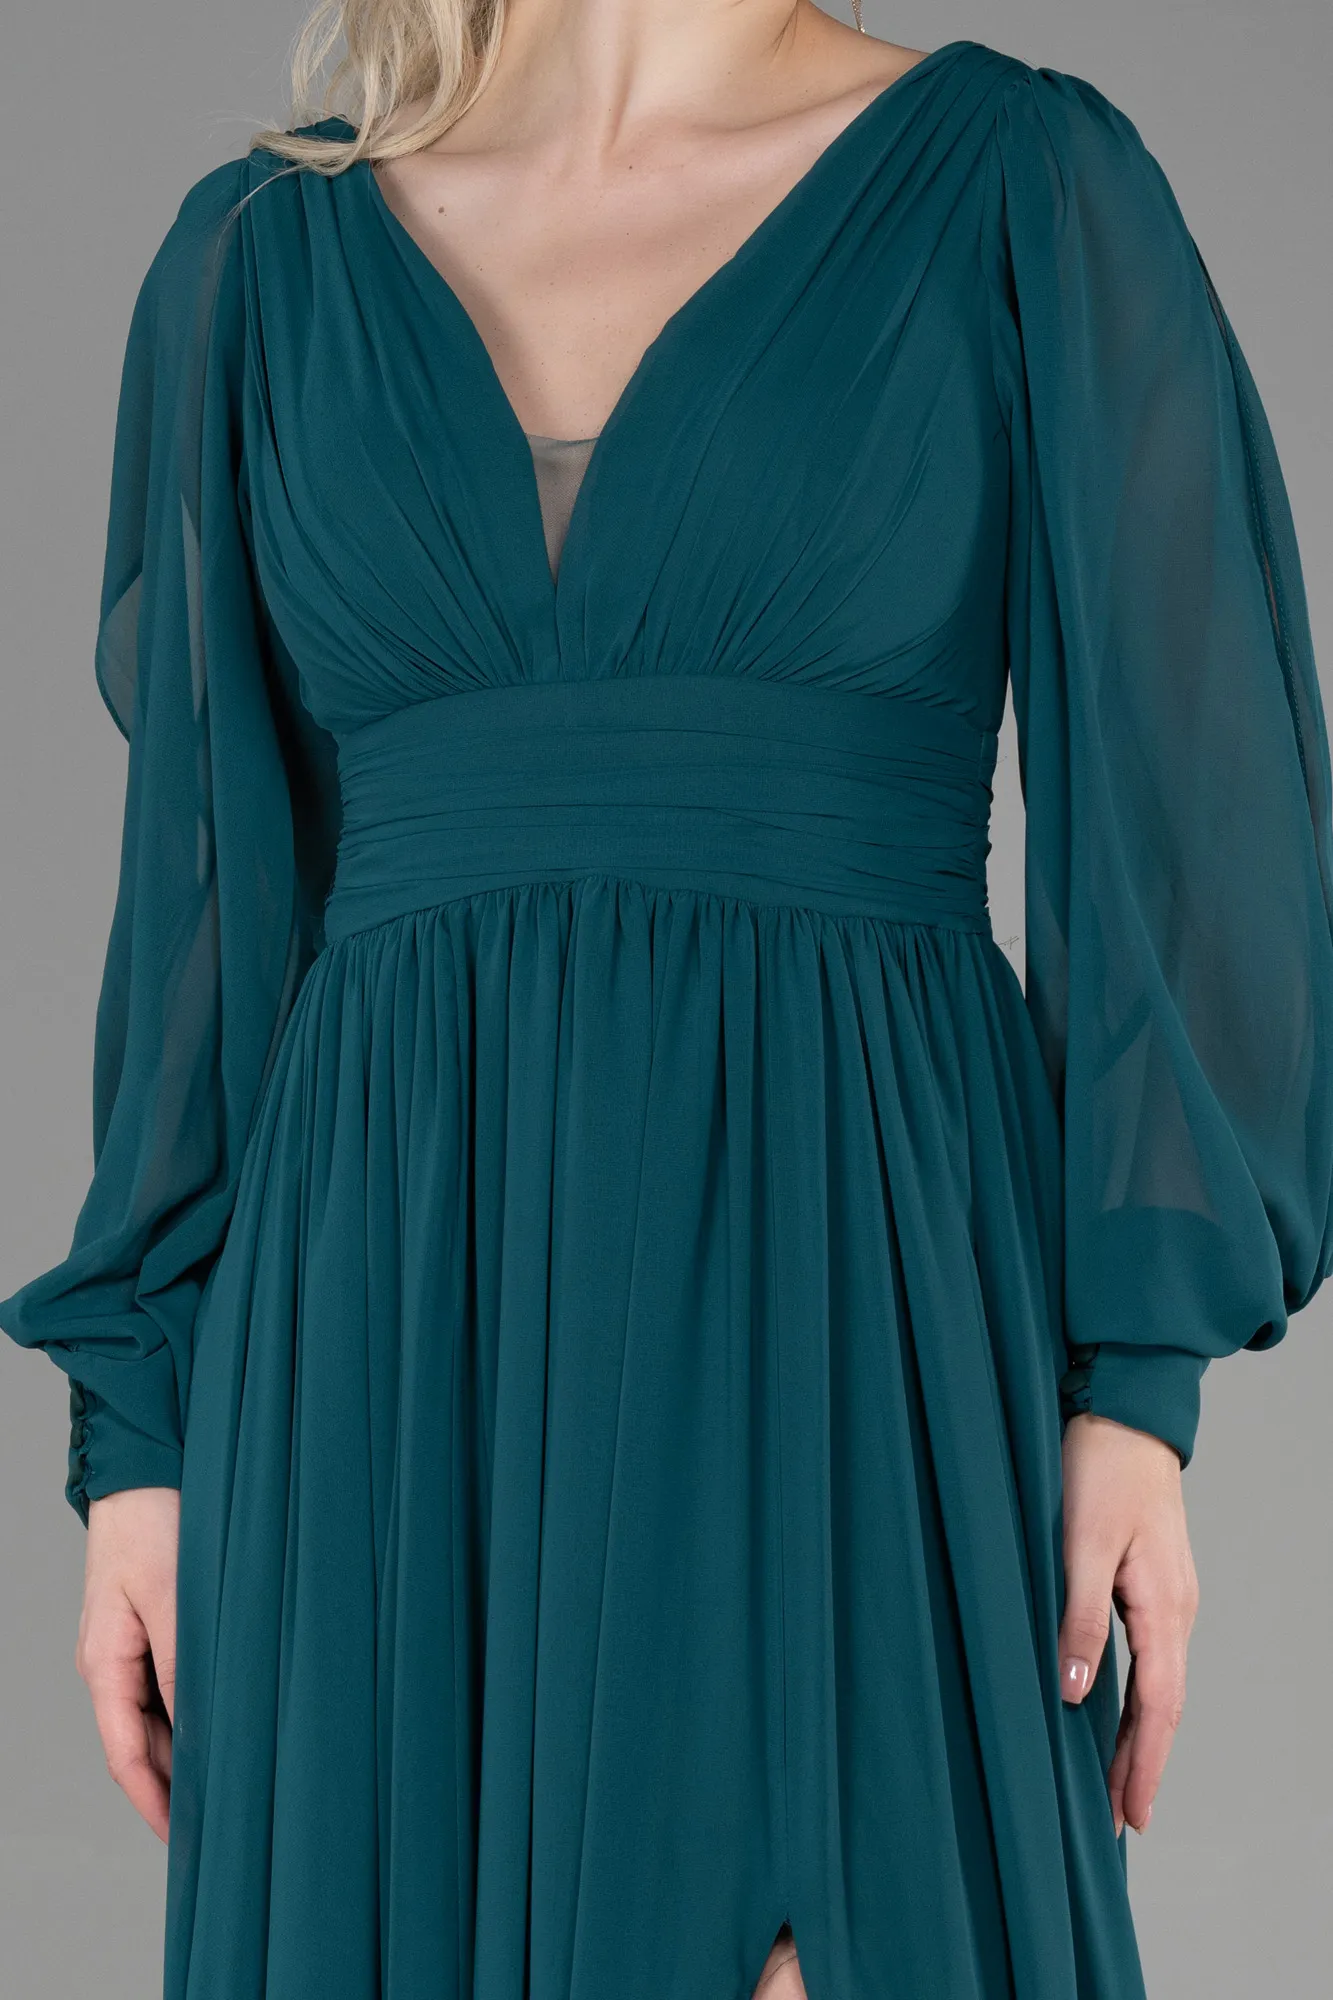 Emerald Green-Long Chiffon Evening Dress ABU1702